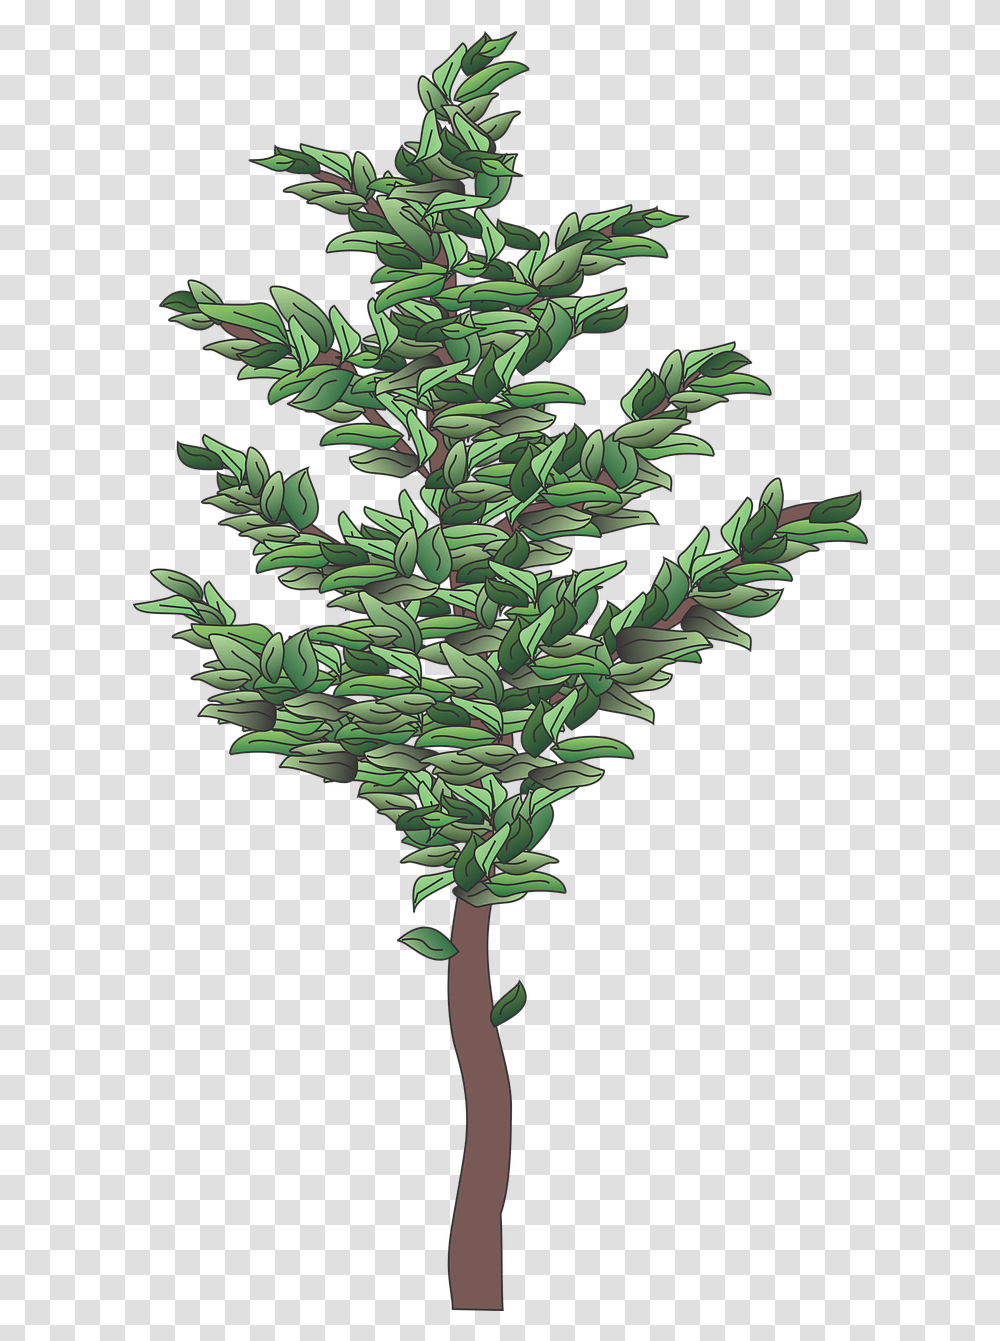 Shrub Plant Tree Christmas Tree, Leaf, Pineapple, Food, Vegetation Transparent Png